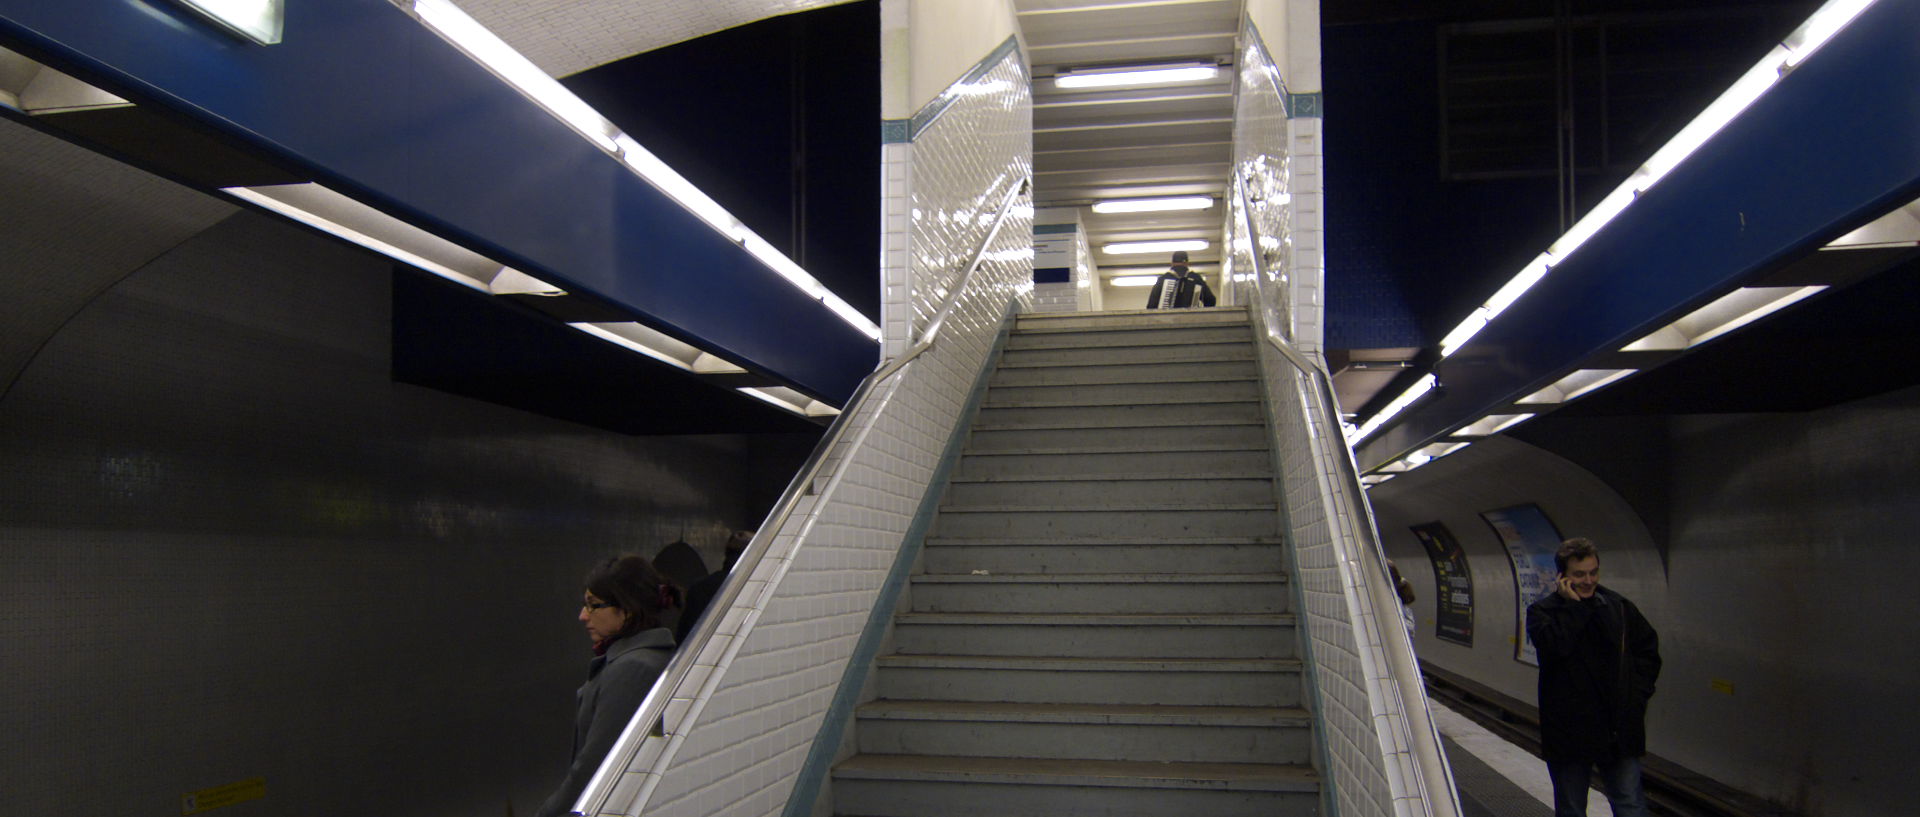 Mardi 17 février 2009, 18:56, station de métro Invalides, à Paris.